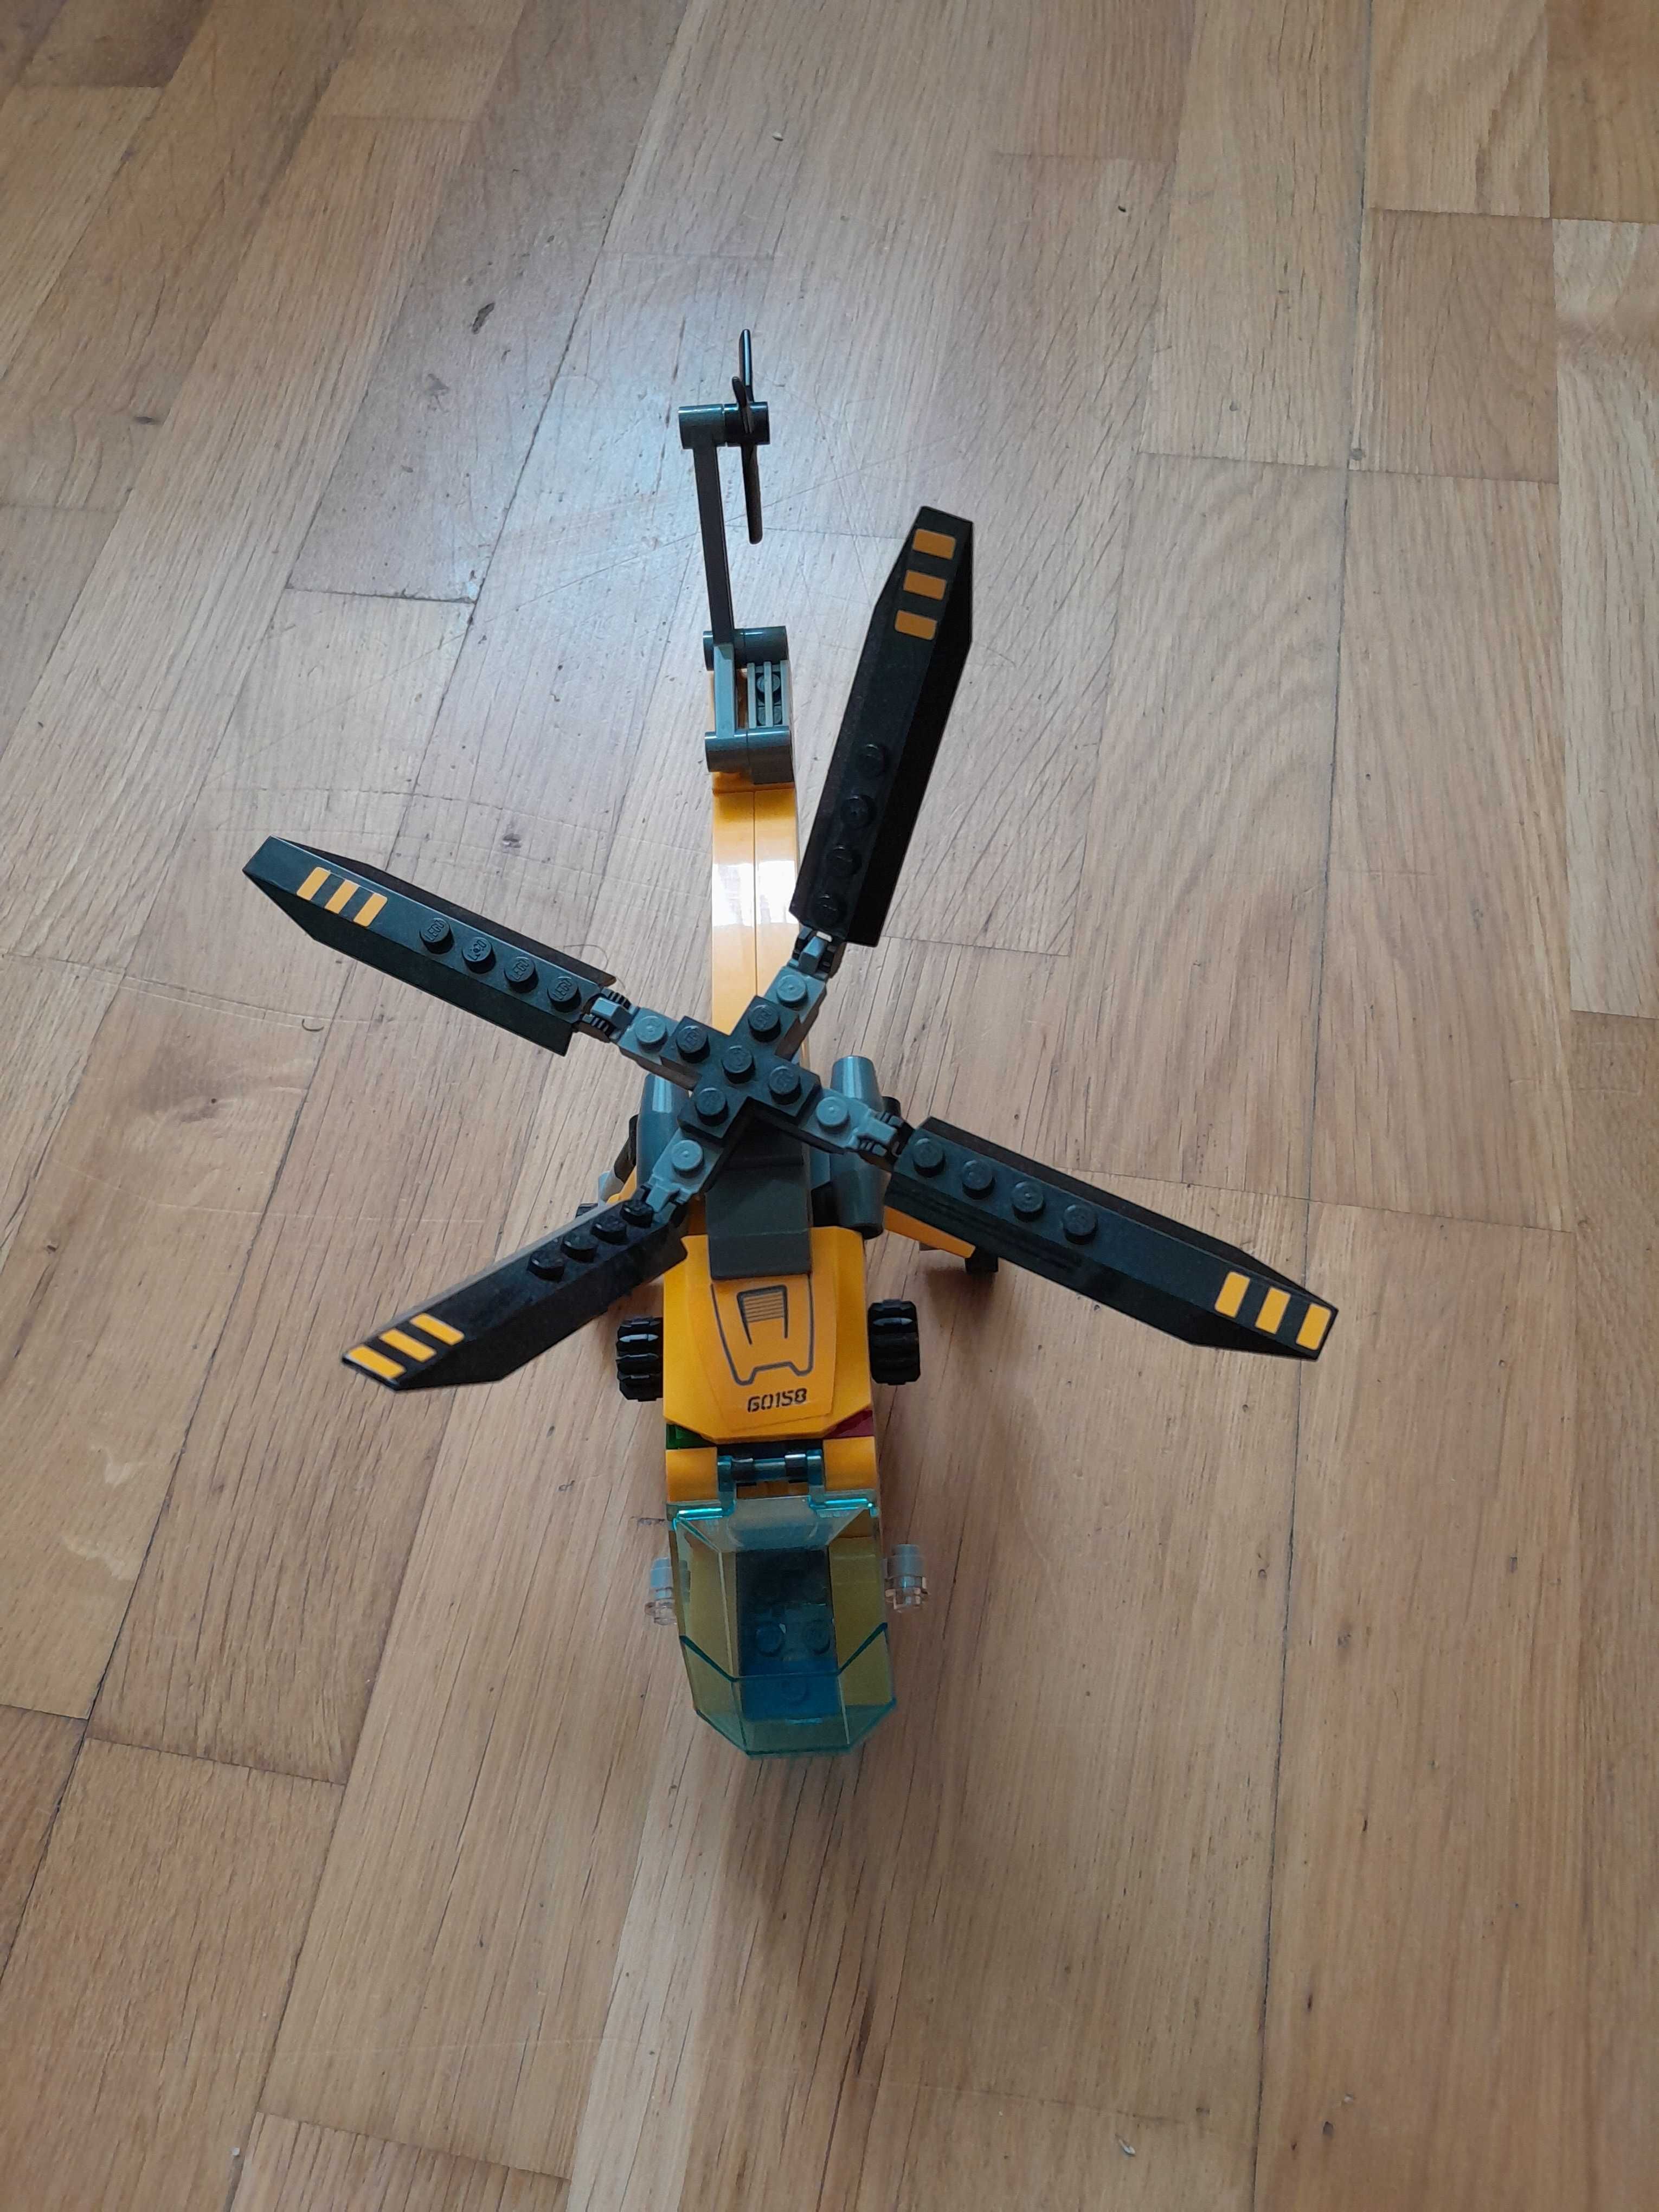 Lego City 60158 i 60159 helicopter i półgąsienicowa terenówka.